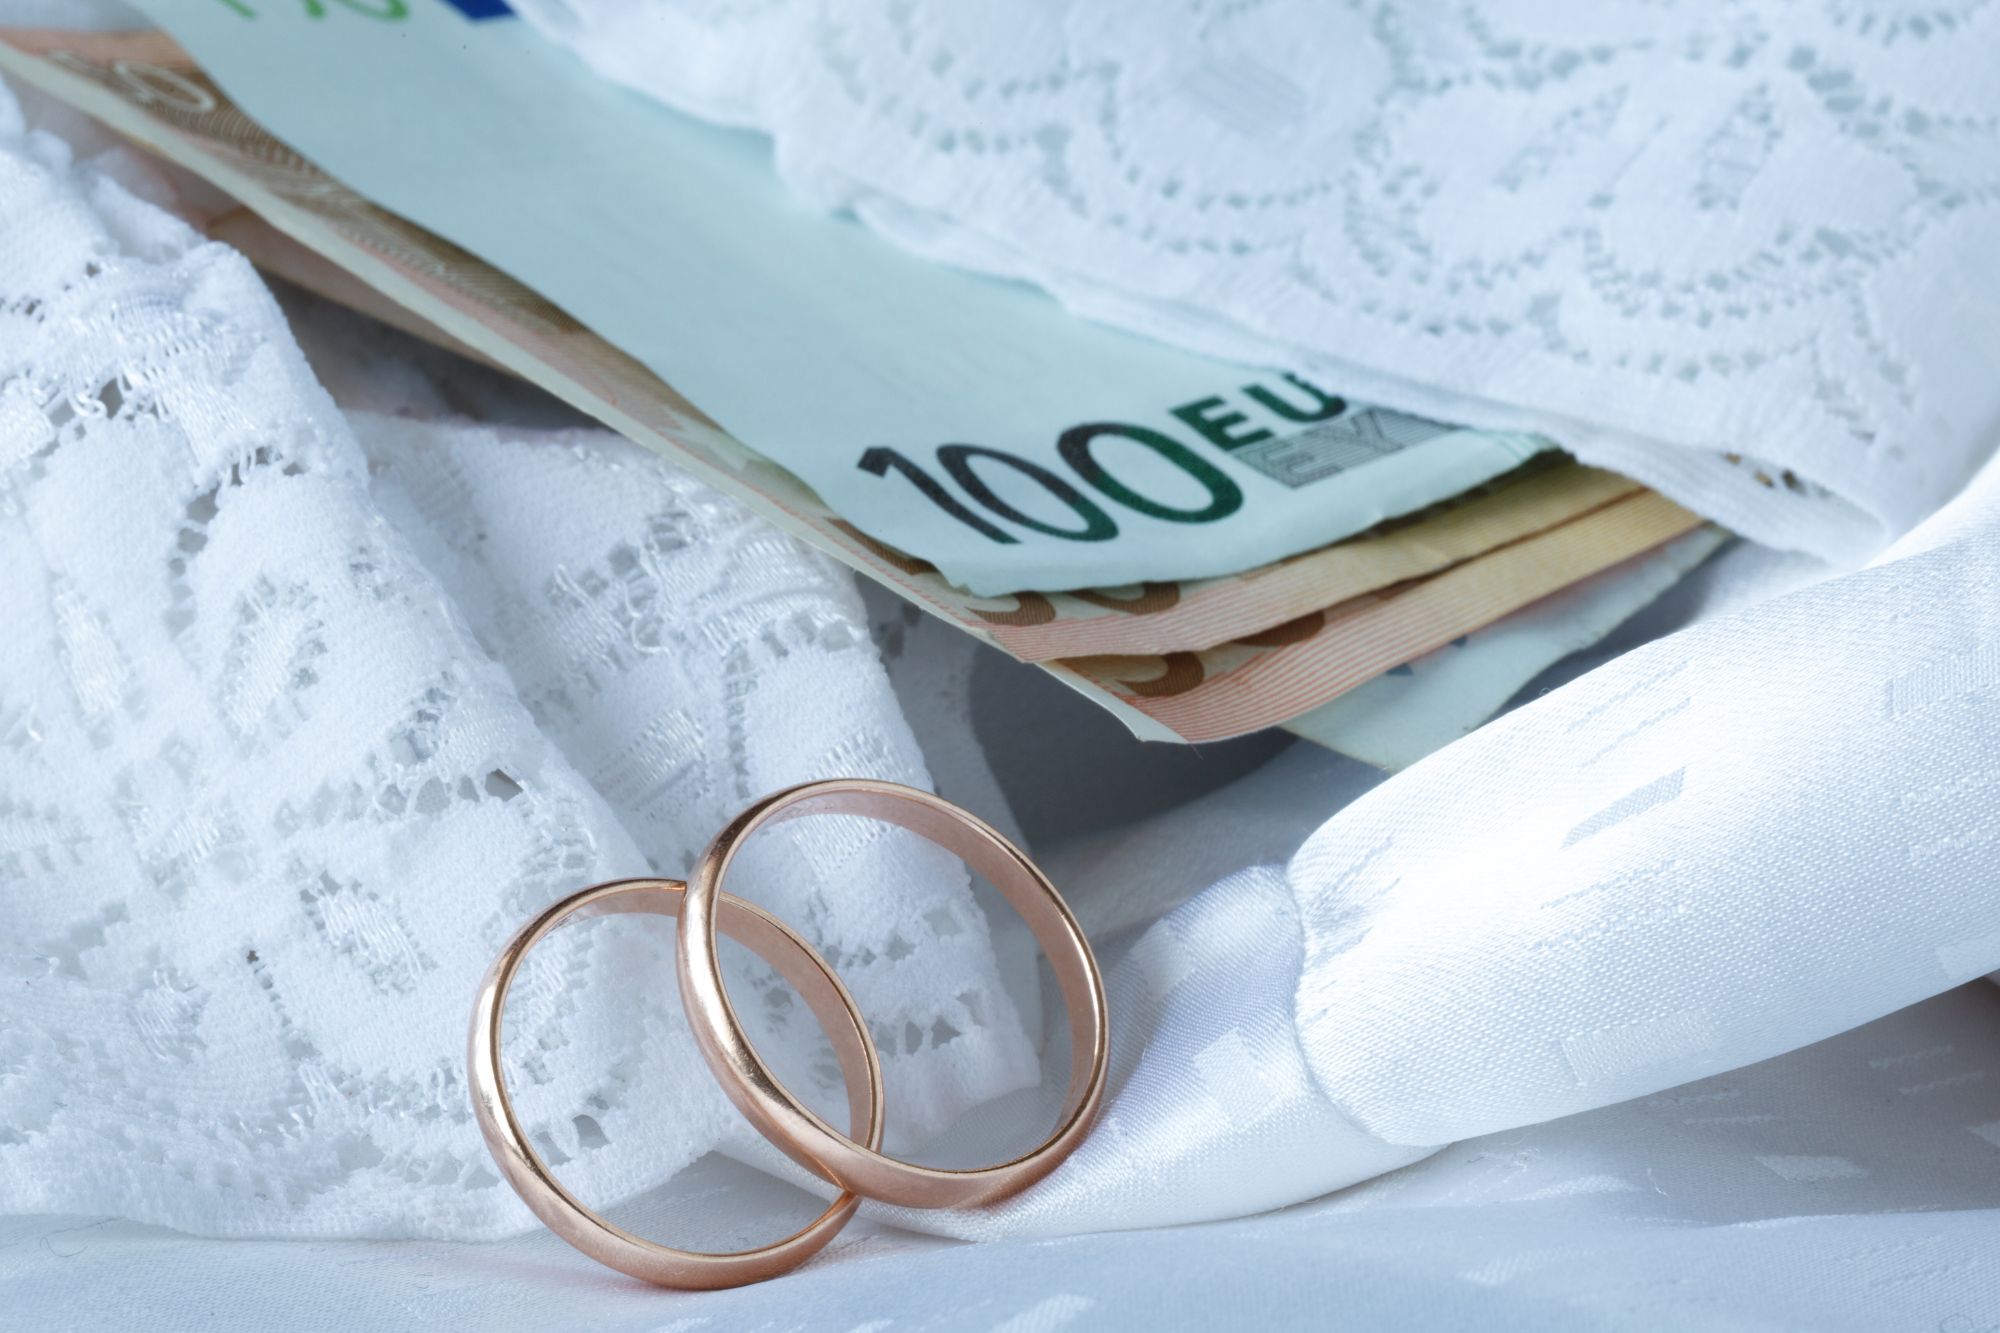 Matrimonio, 300 invitati e fino a 50 mila euro di spesa: ecco il profilo degli sposi italiani